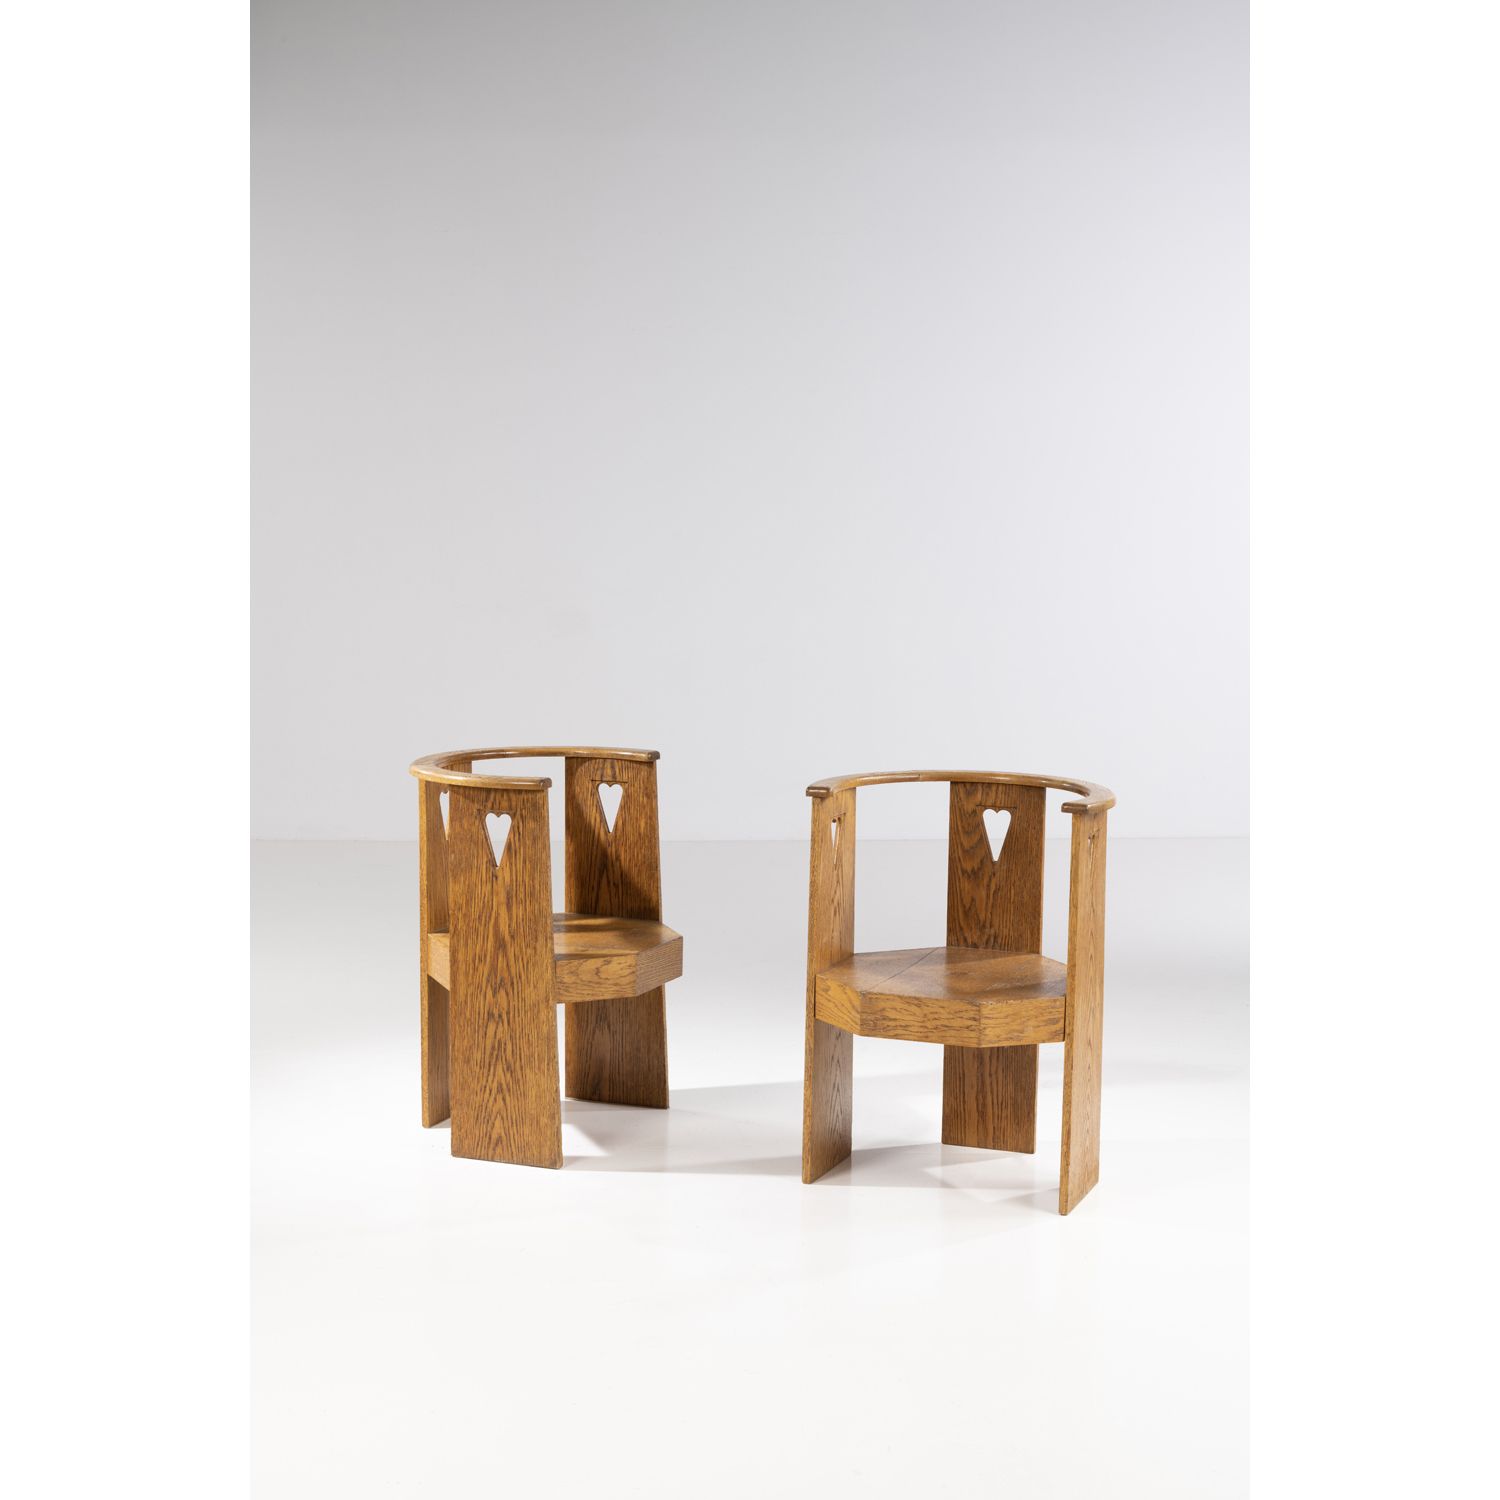 Null 埃利尔-萨里宁(1873-1950)

一对扶手椅

橡木

1910年左右设计

高 82.5 × 宽 63 × 深 57 厘米

参考文献 :

&hellip;